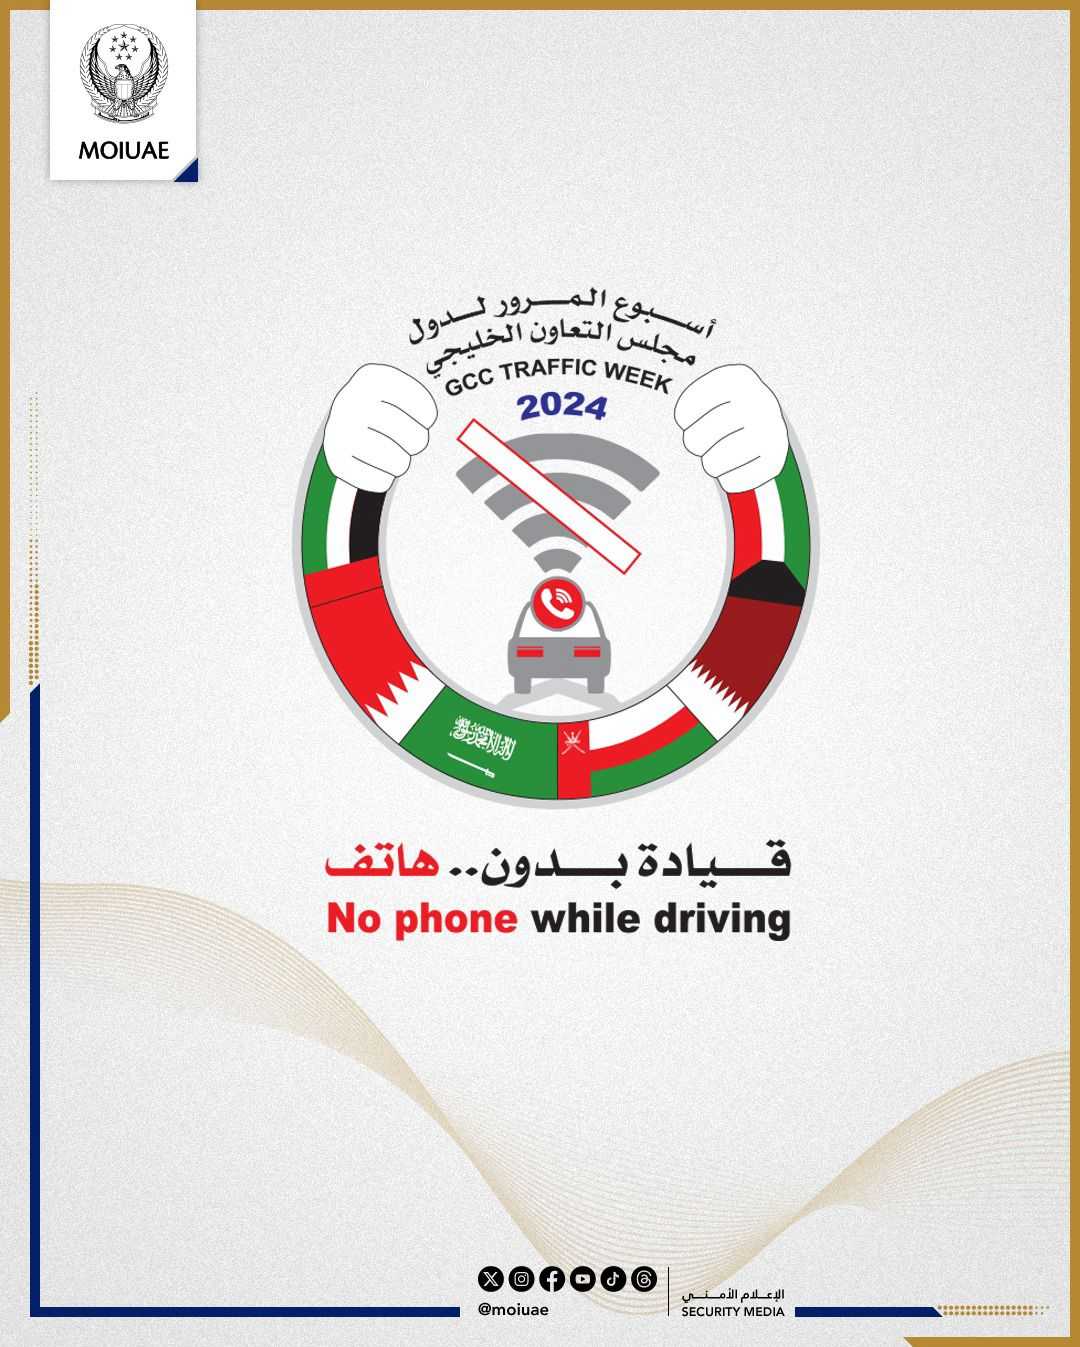 MOI takes part in GCC Traffic Week 2024 